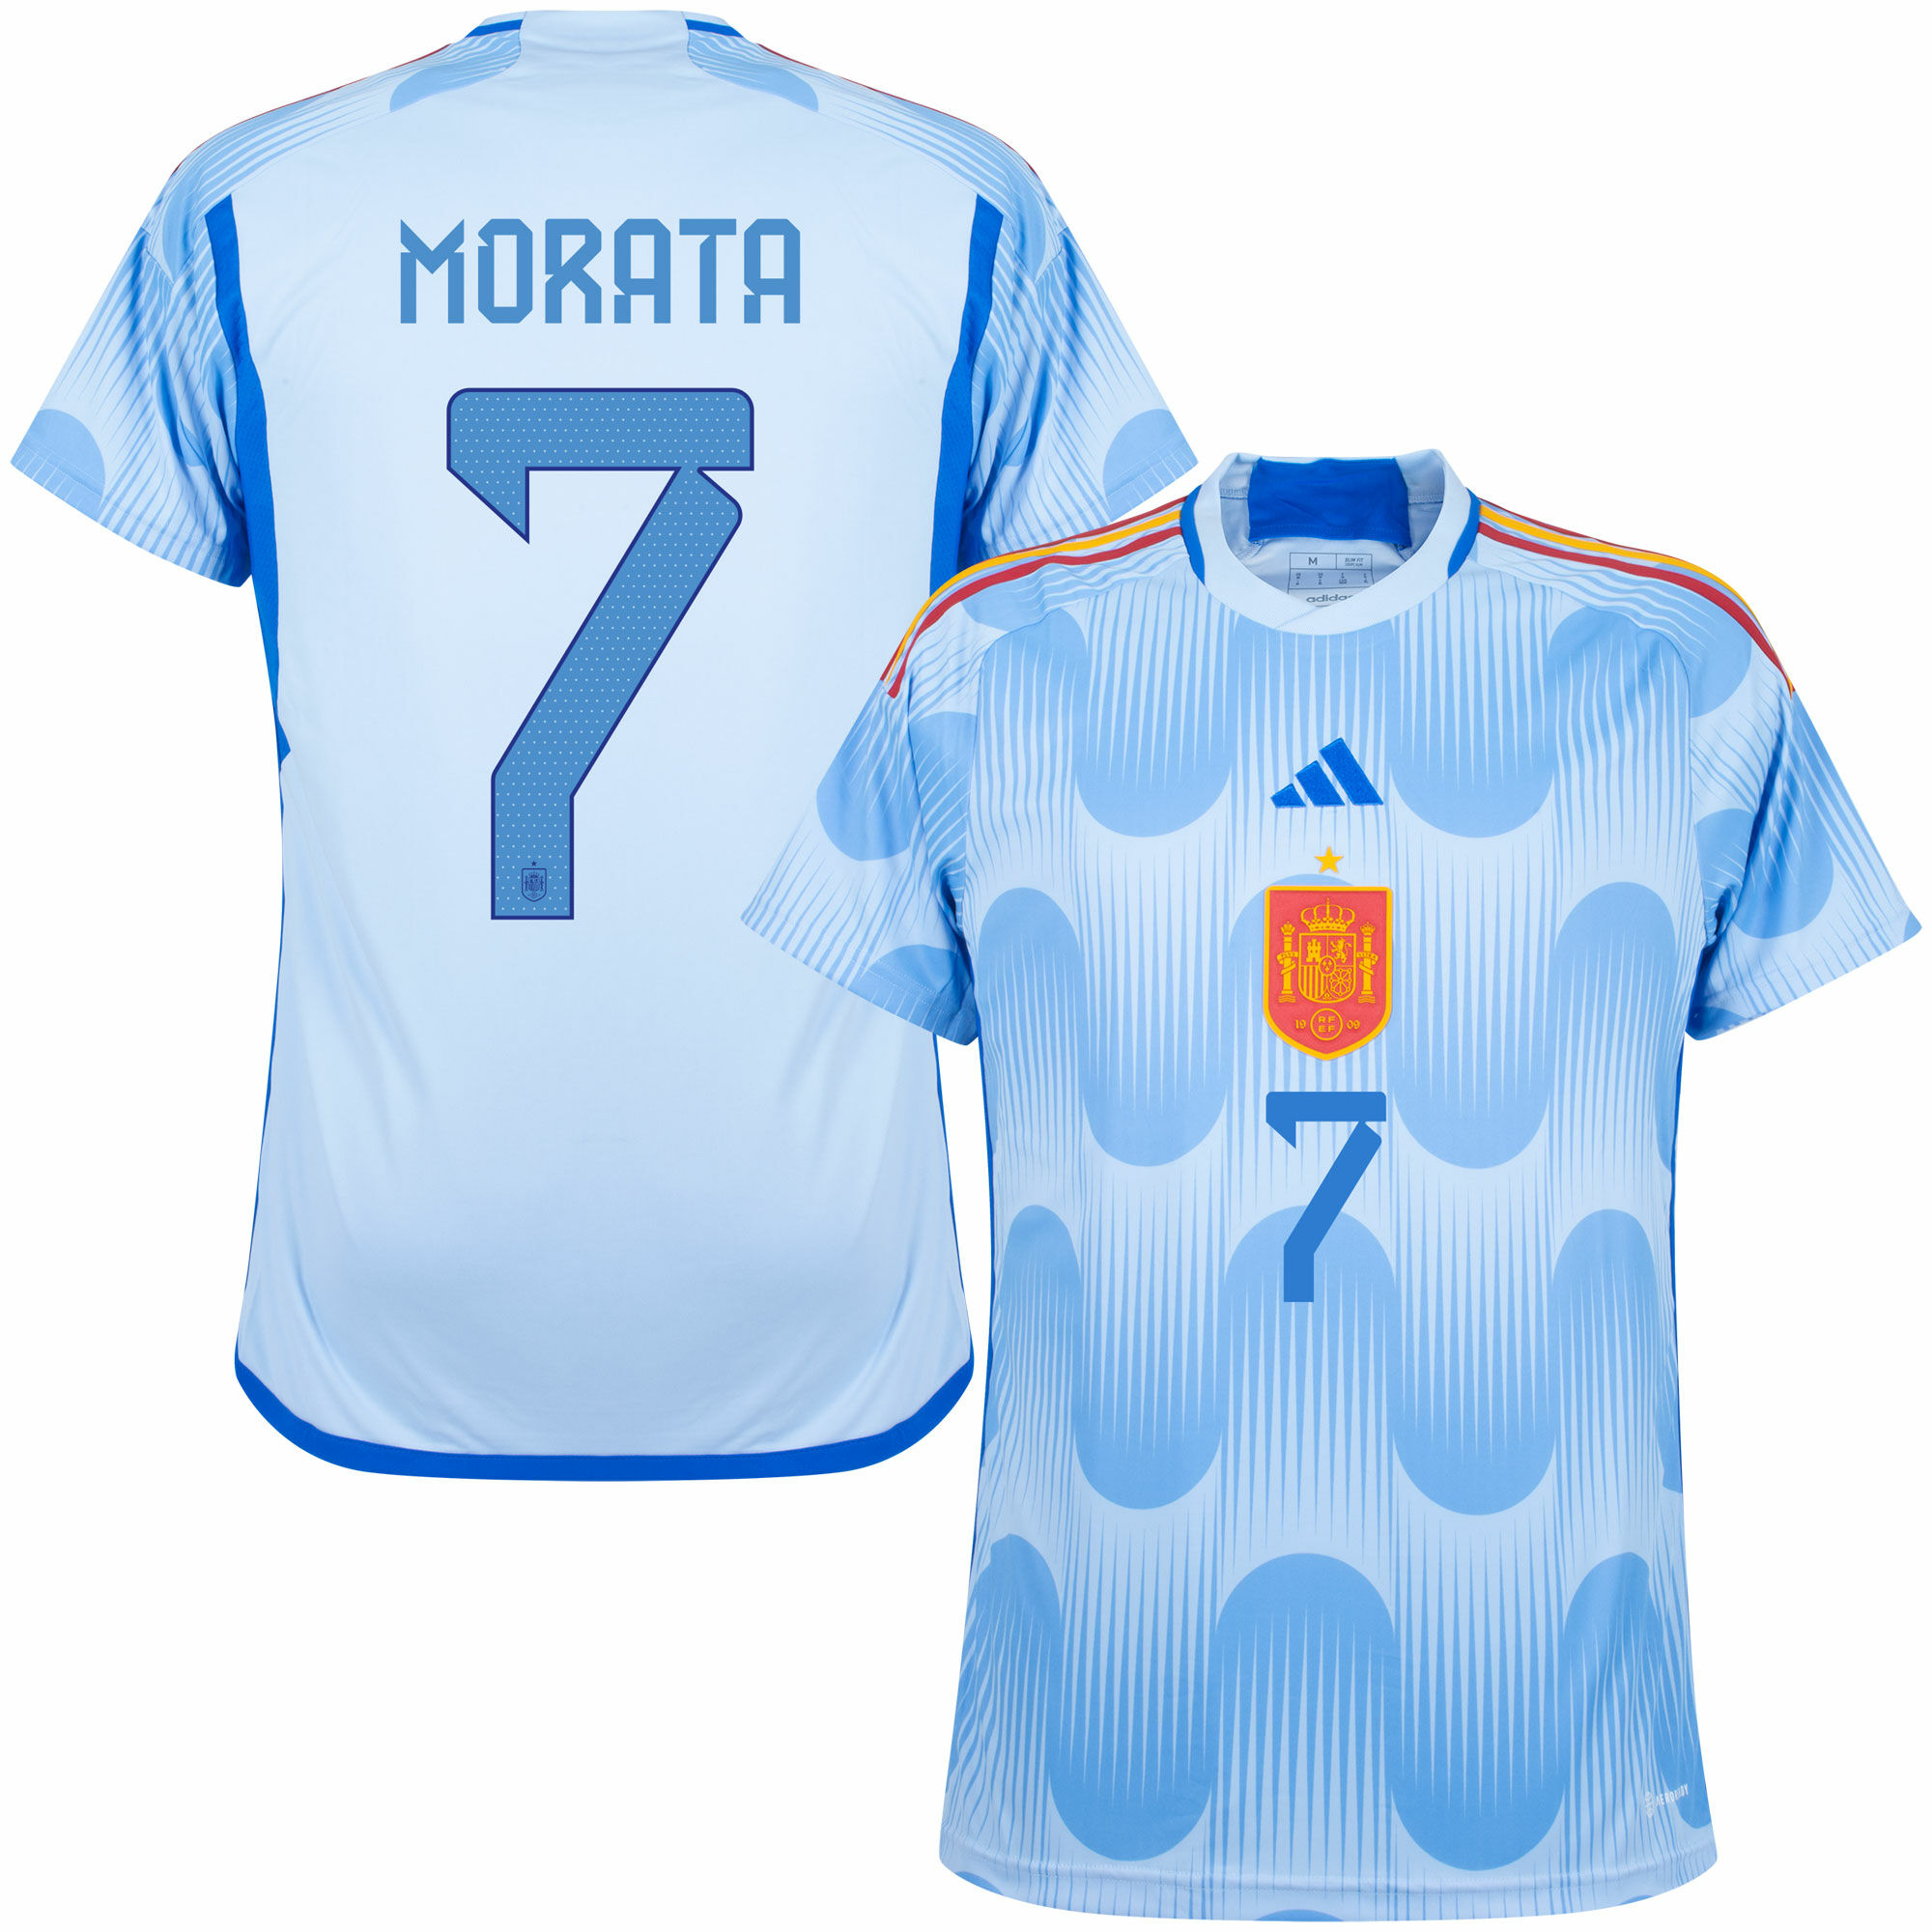 Španělsko - Dres fotbalový - oficiální potisk, Álvaro Morata, sezóna 2022/23, číslo 7, modrý, venkovní